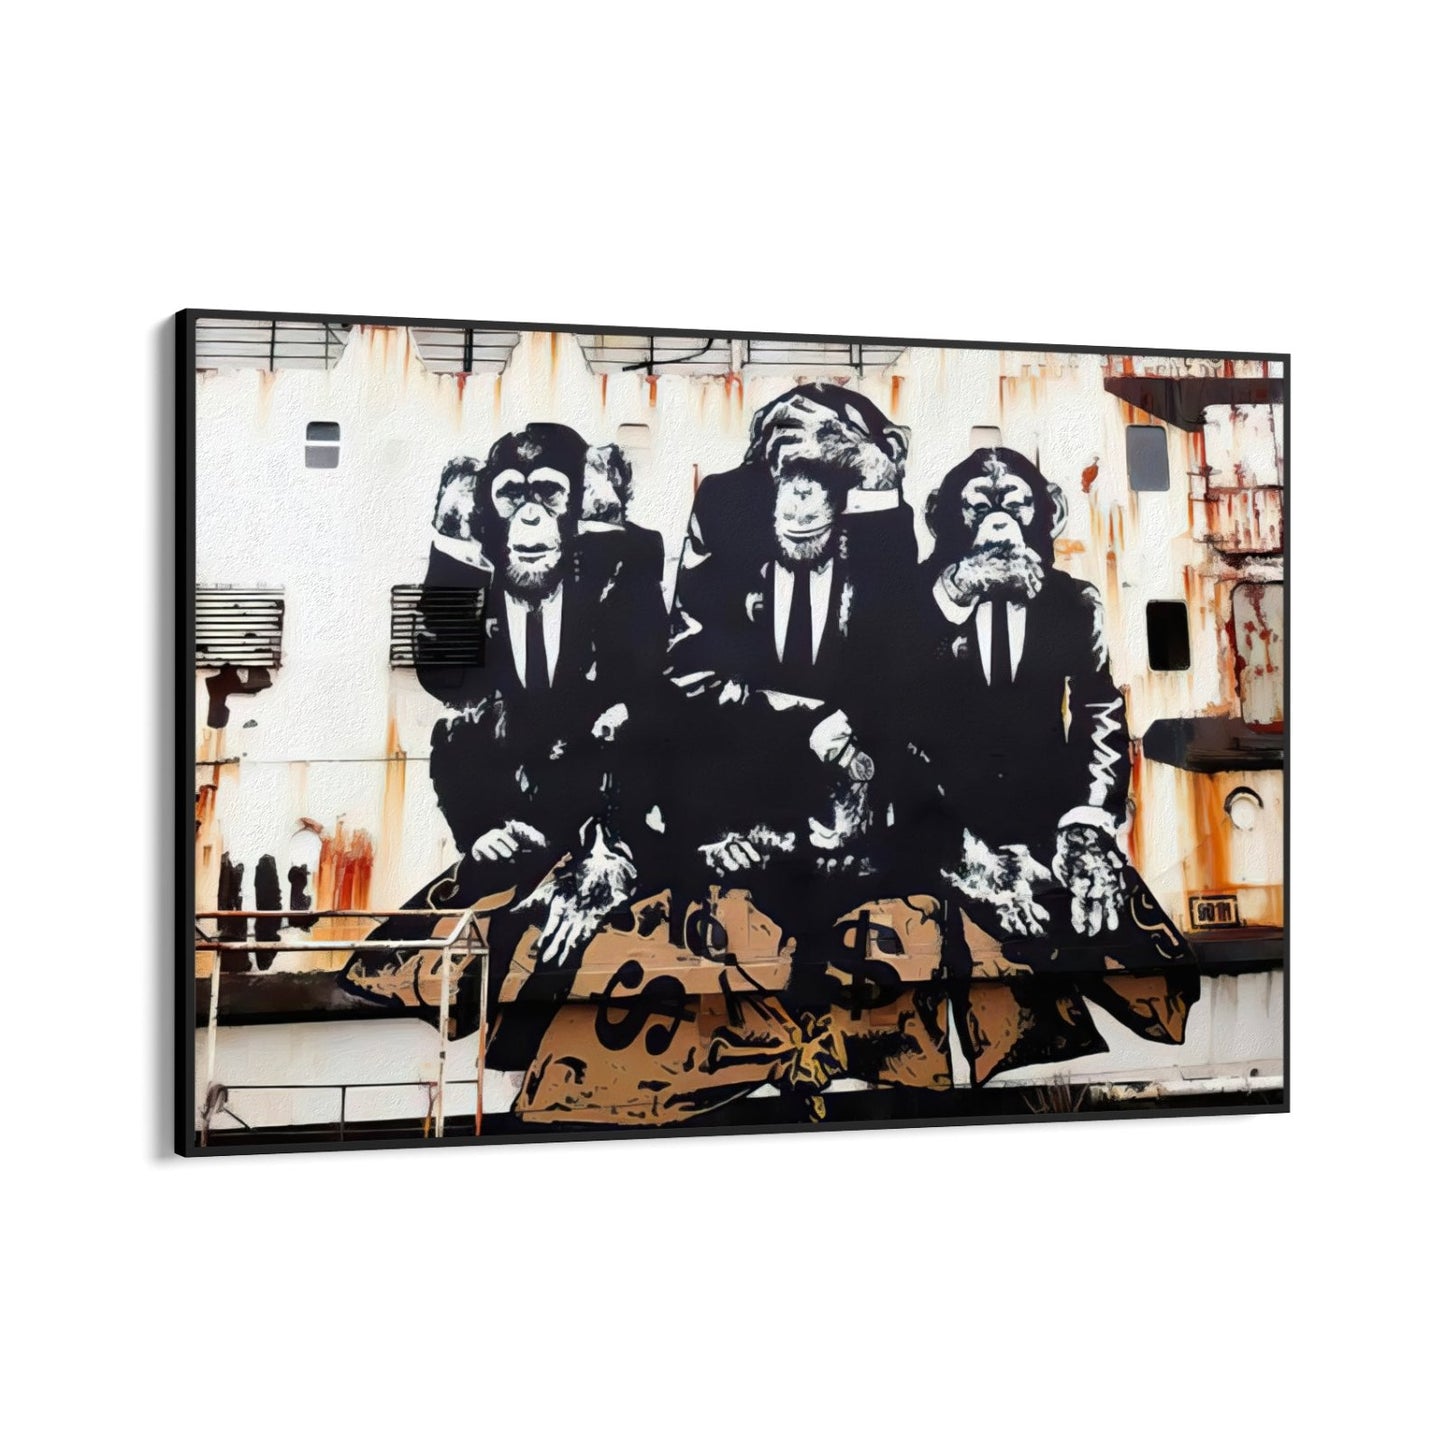 Trzy małpy biznesu, Banksy